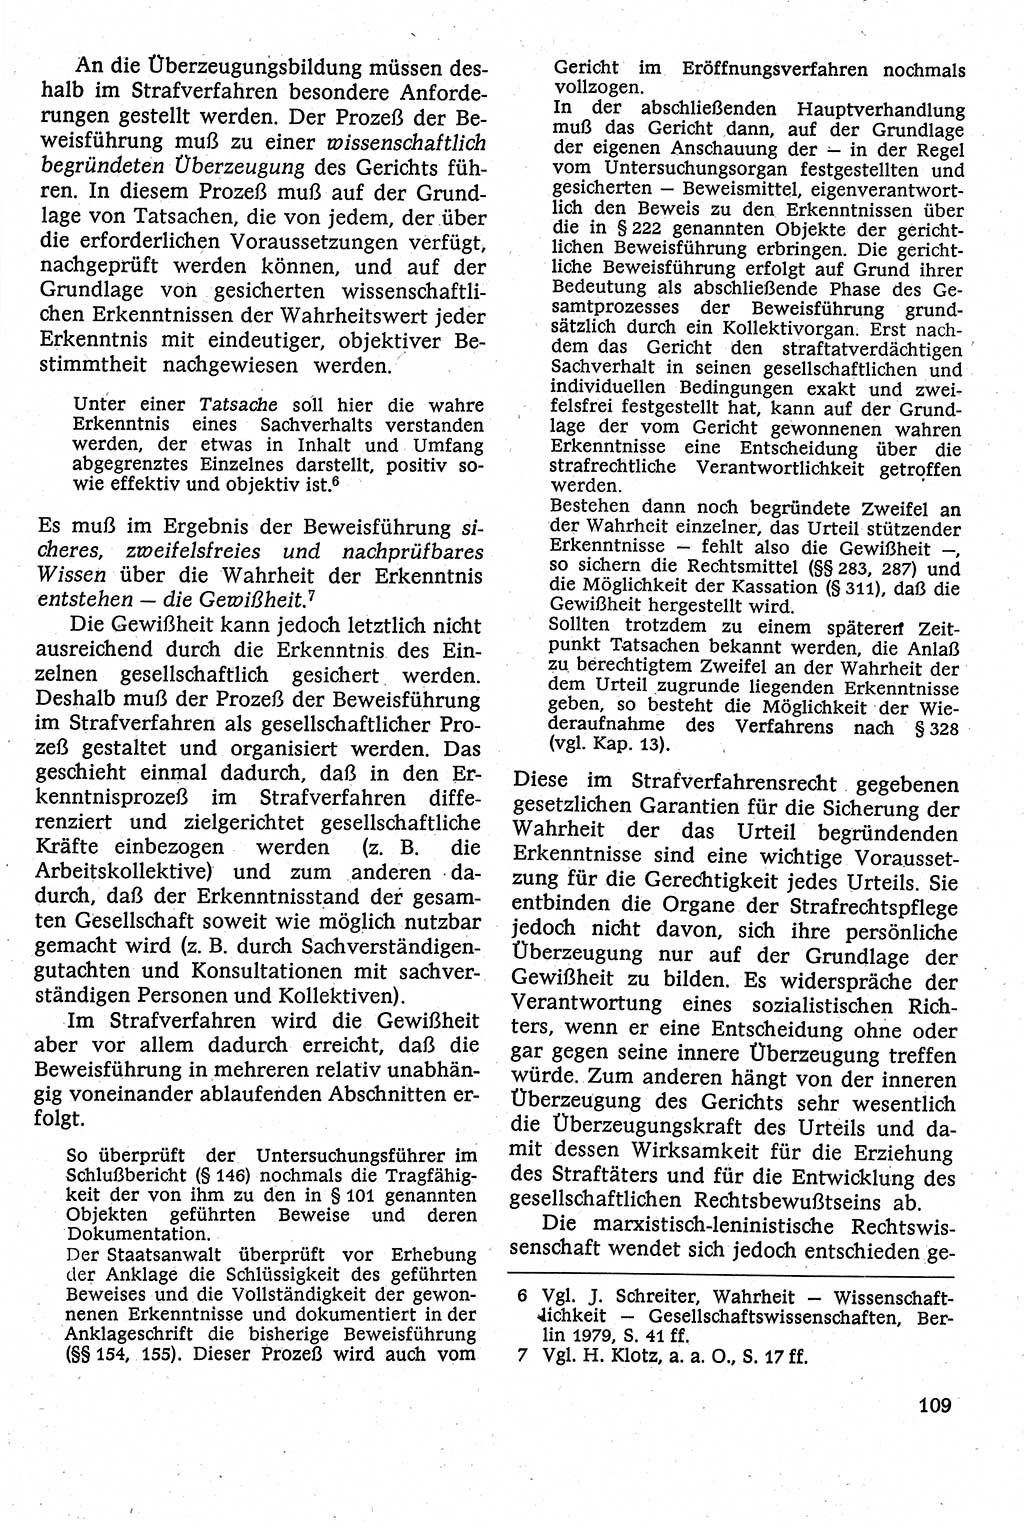 Strafverfahrensrecht [Deutsche Demokratische Republik (DDR)], Lehrbuch 1982, Seite 109 (Strafverf.-R. DDR Lb. 1982, S. 109)